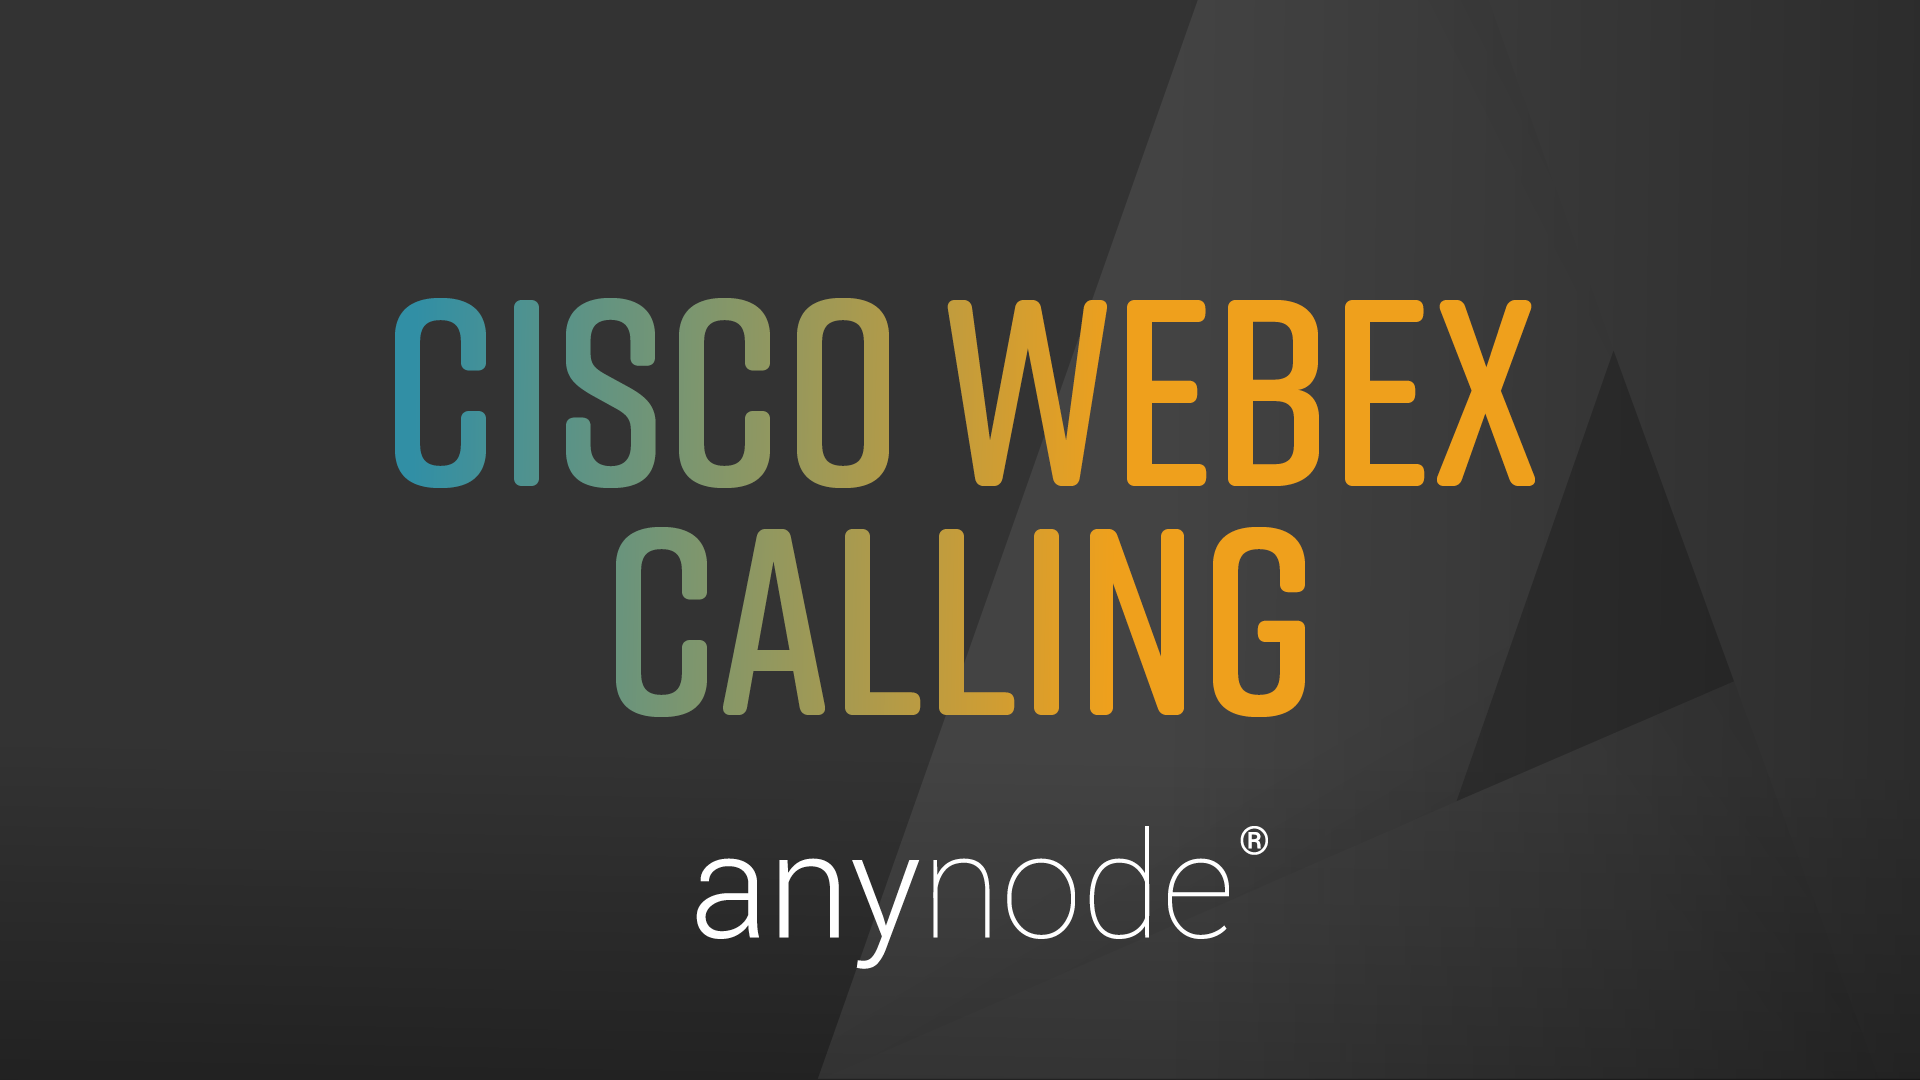 Mit Cisco Webex Calling kann anynode nahezu an jedes öffentliche Telefonnetz angeschlossen oder mit Telefonanlagen von Drittanbietern verbunden werden.